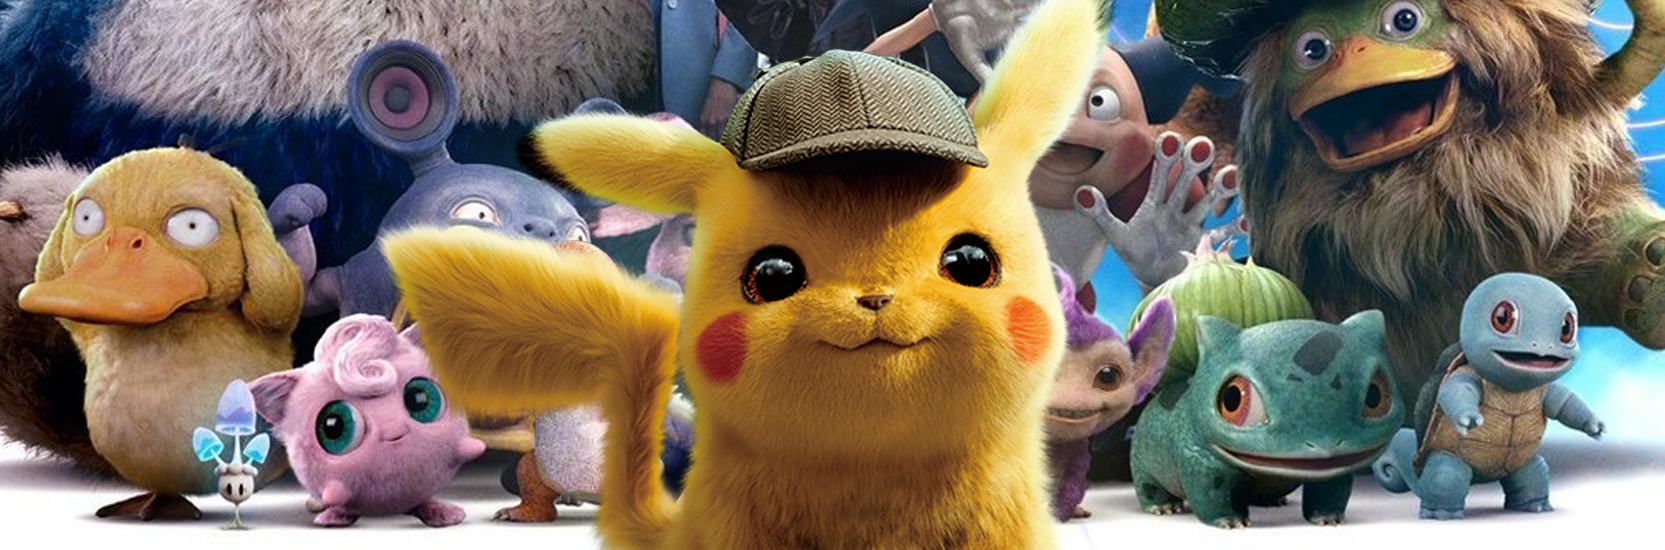 Critique - Pokémon Détective Pikachu, Roger Rabbit's cousin - Little ...